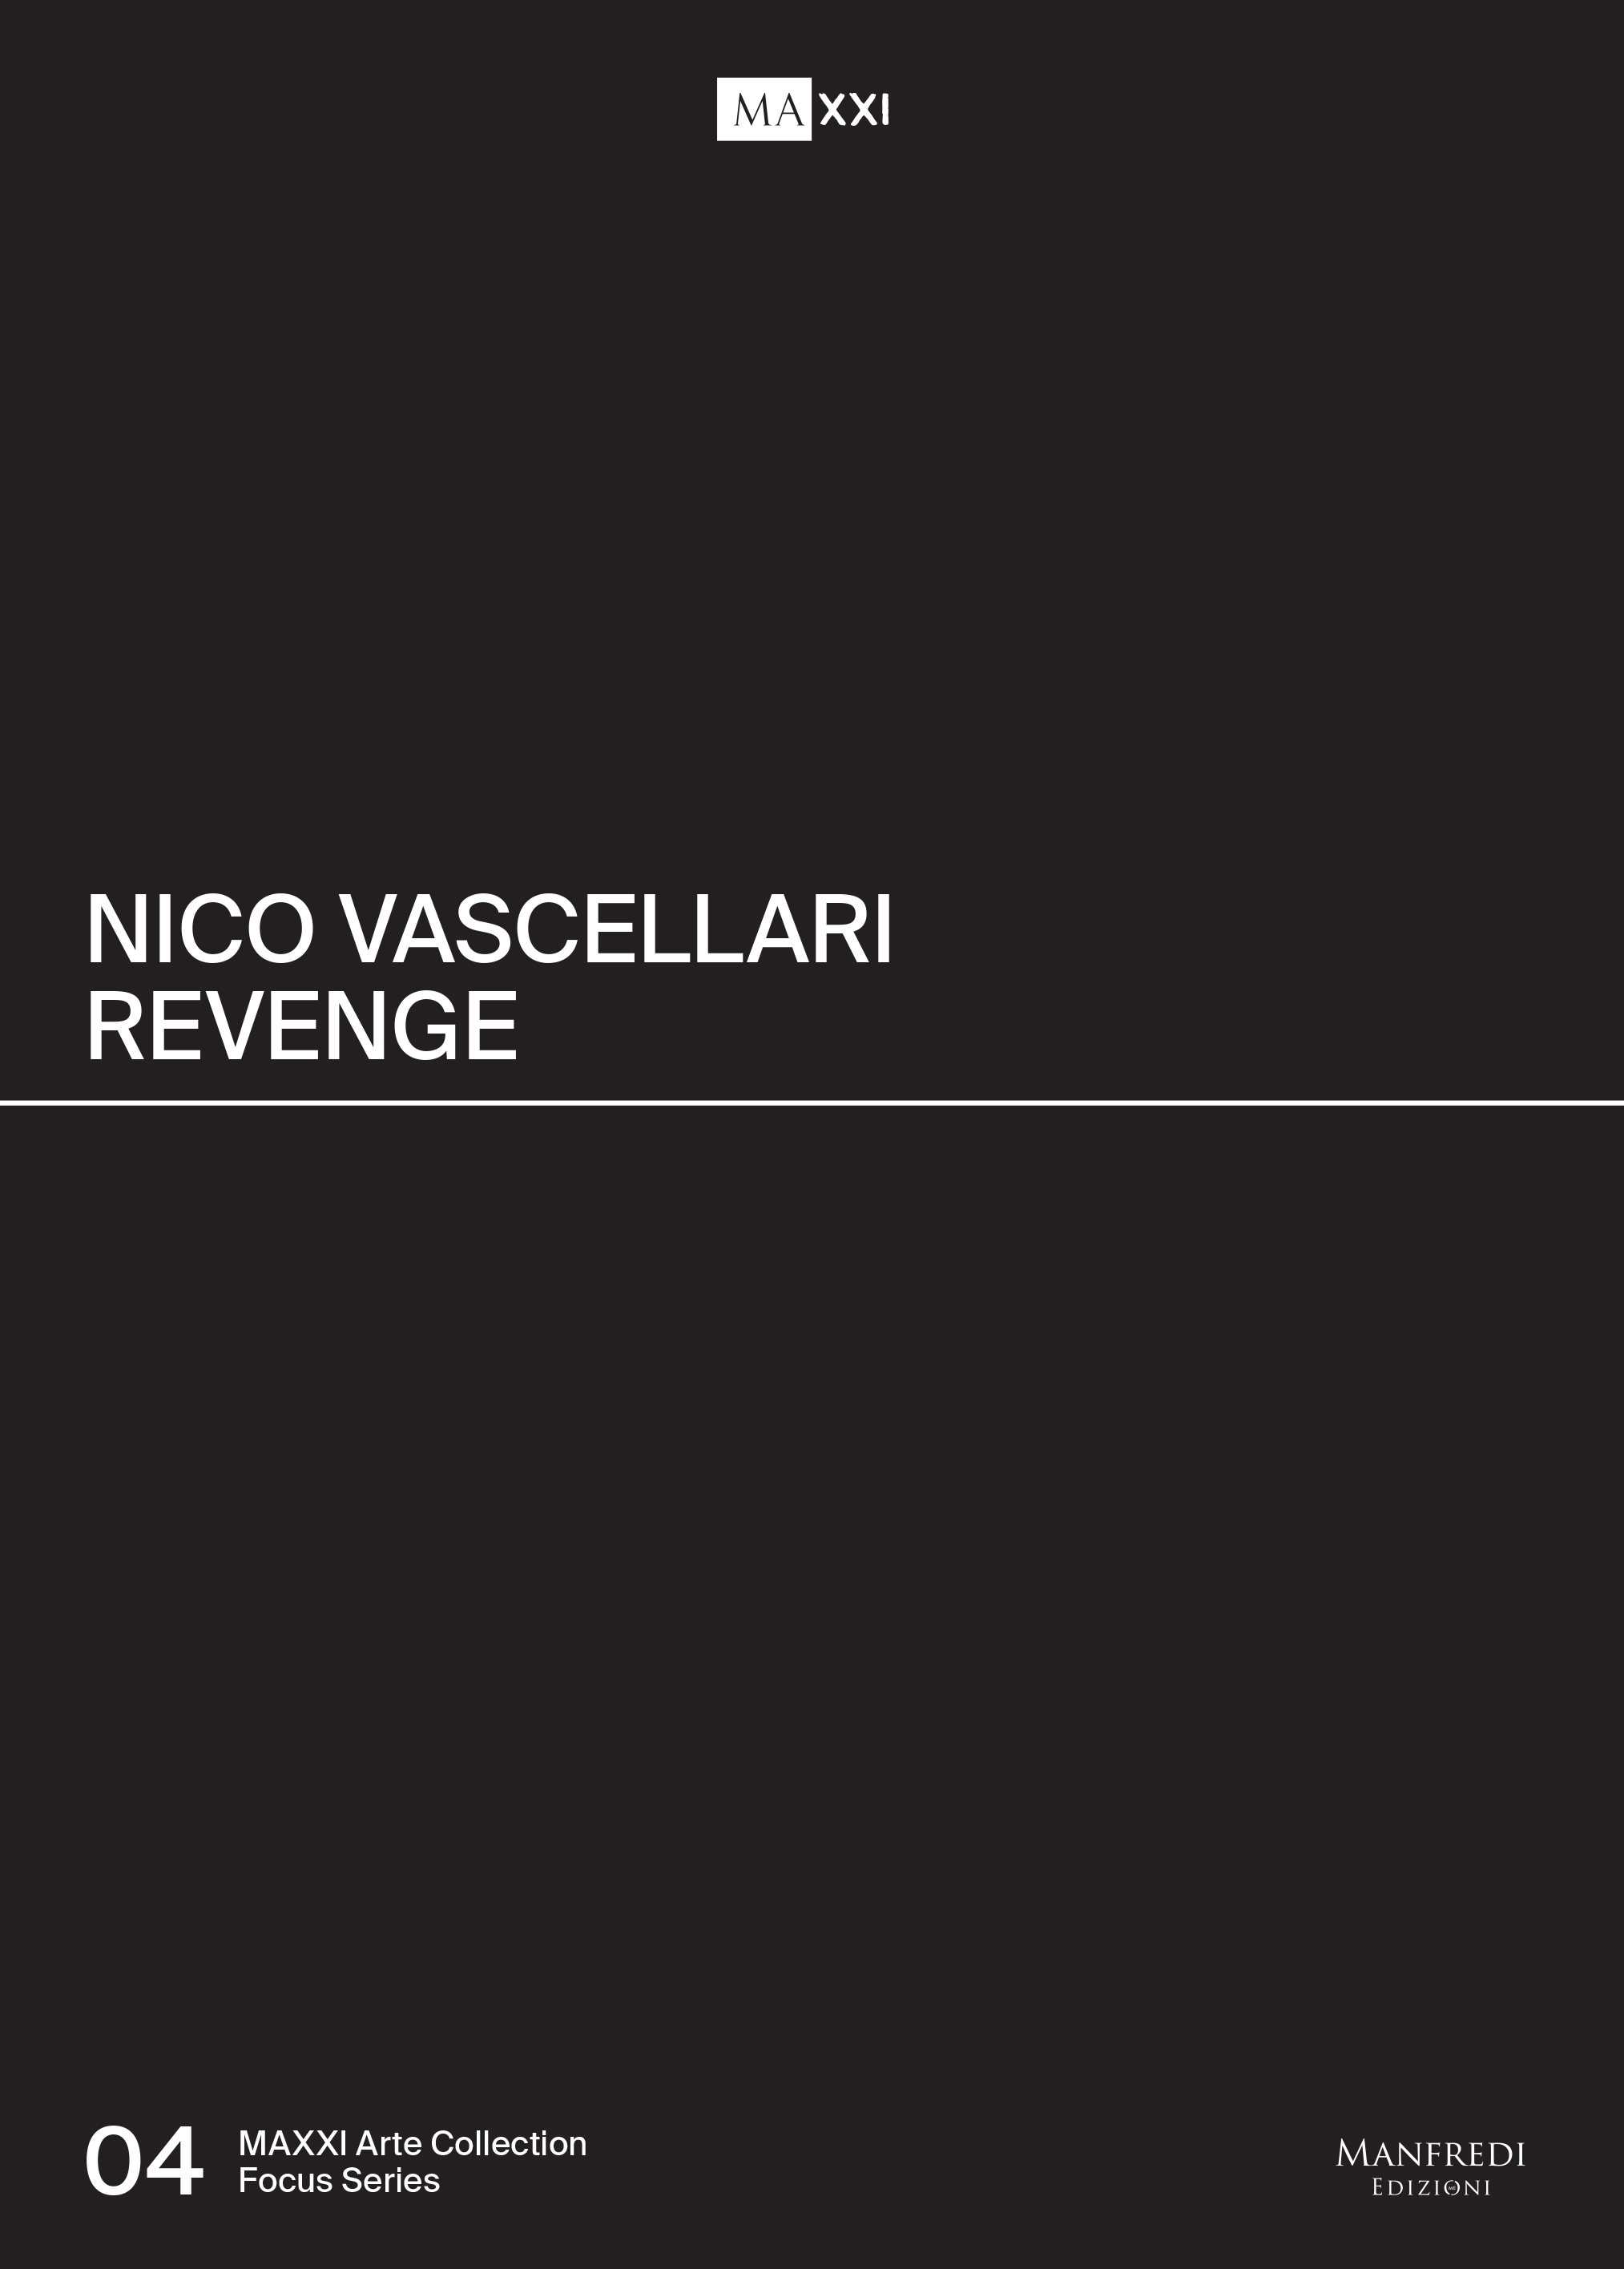 Focus Nico Vascellari Revenge Maxxi